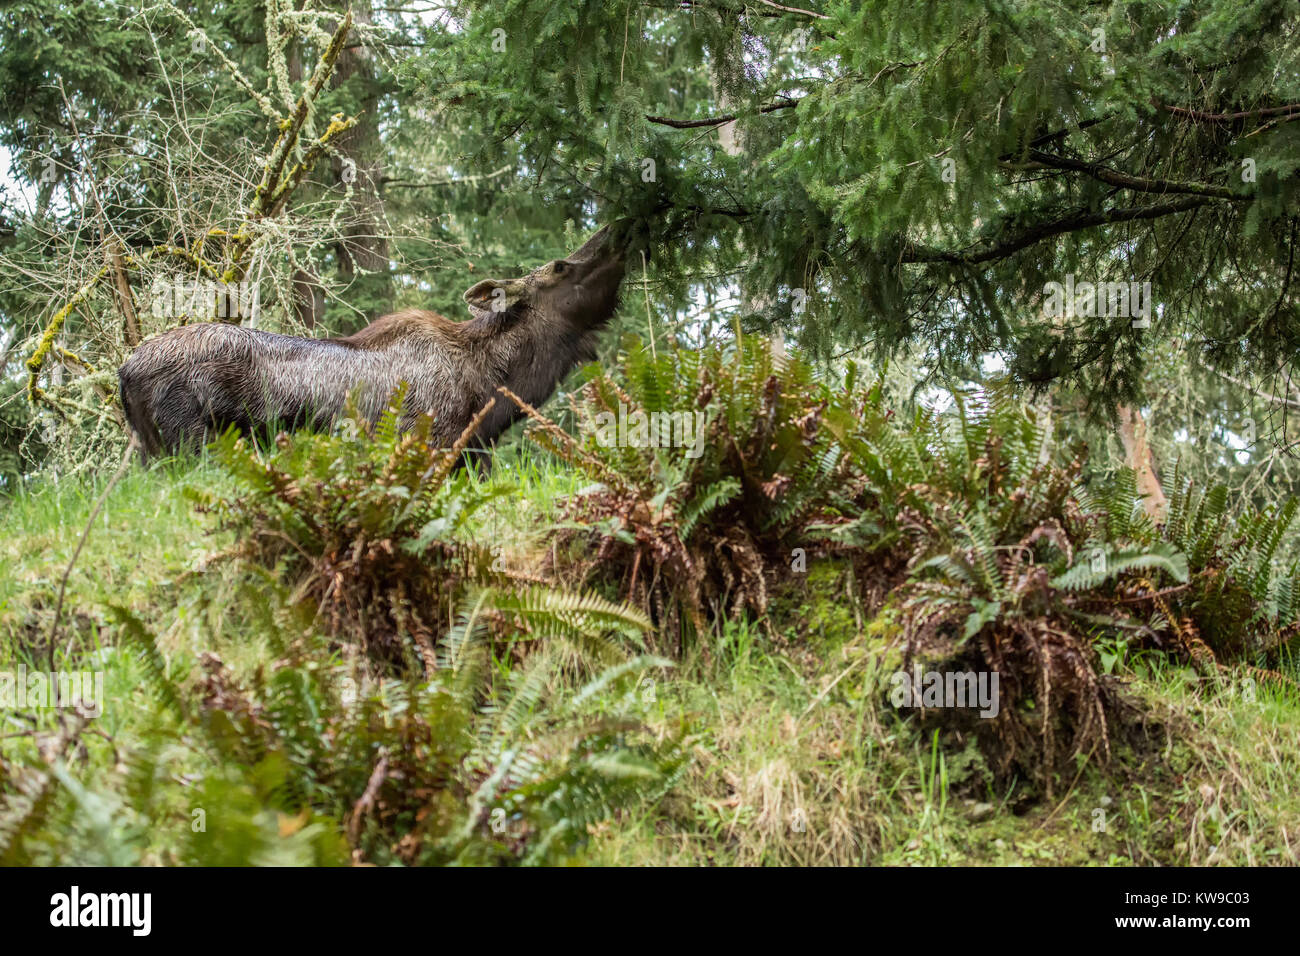 Moose eating foliage at Northwest Trek Wildlife Park near Eatonville, Washington, USA Stock Photo